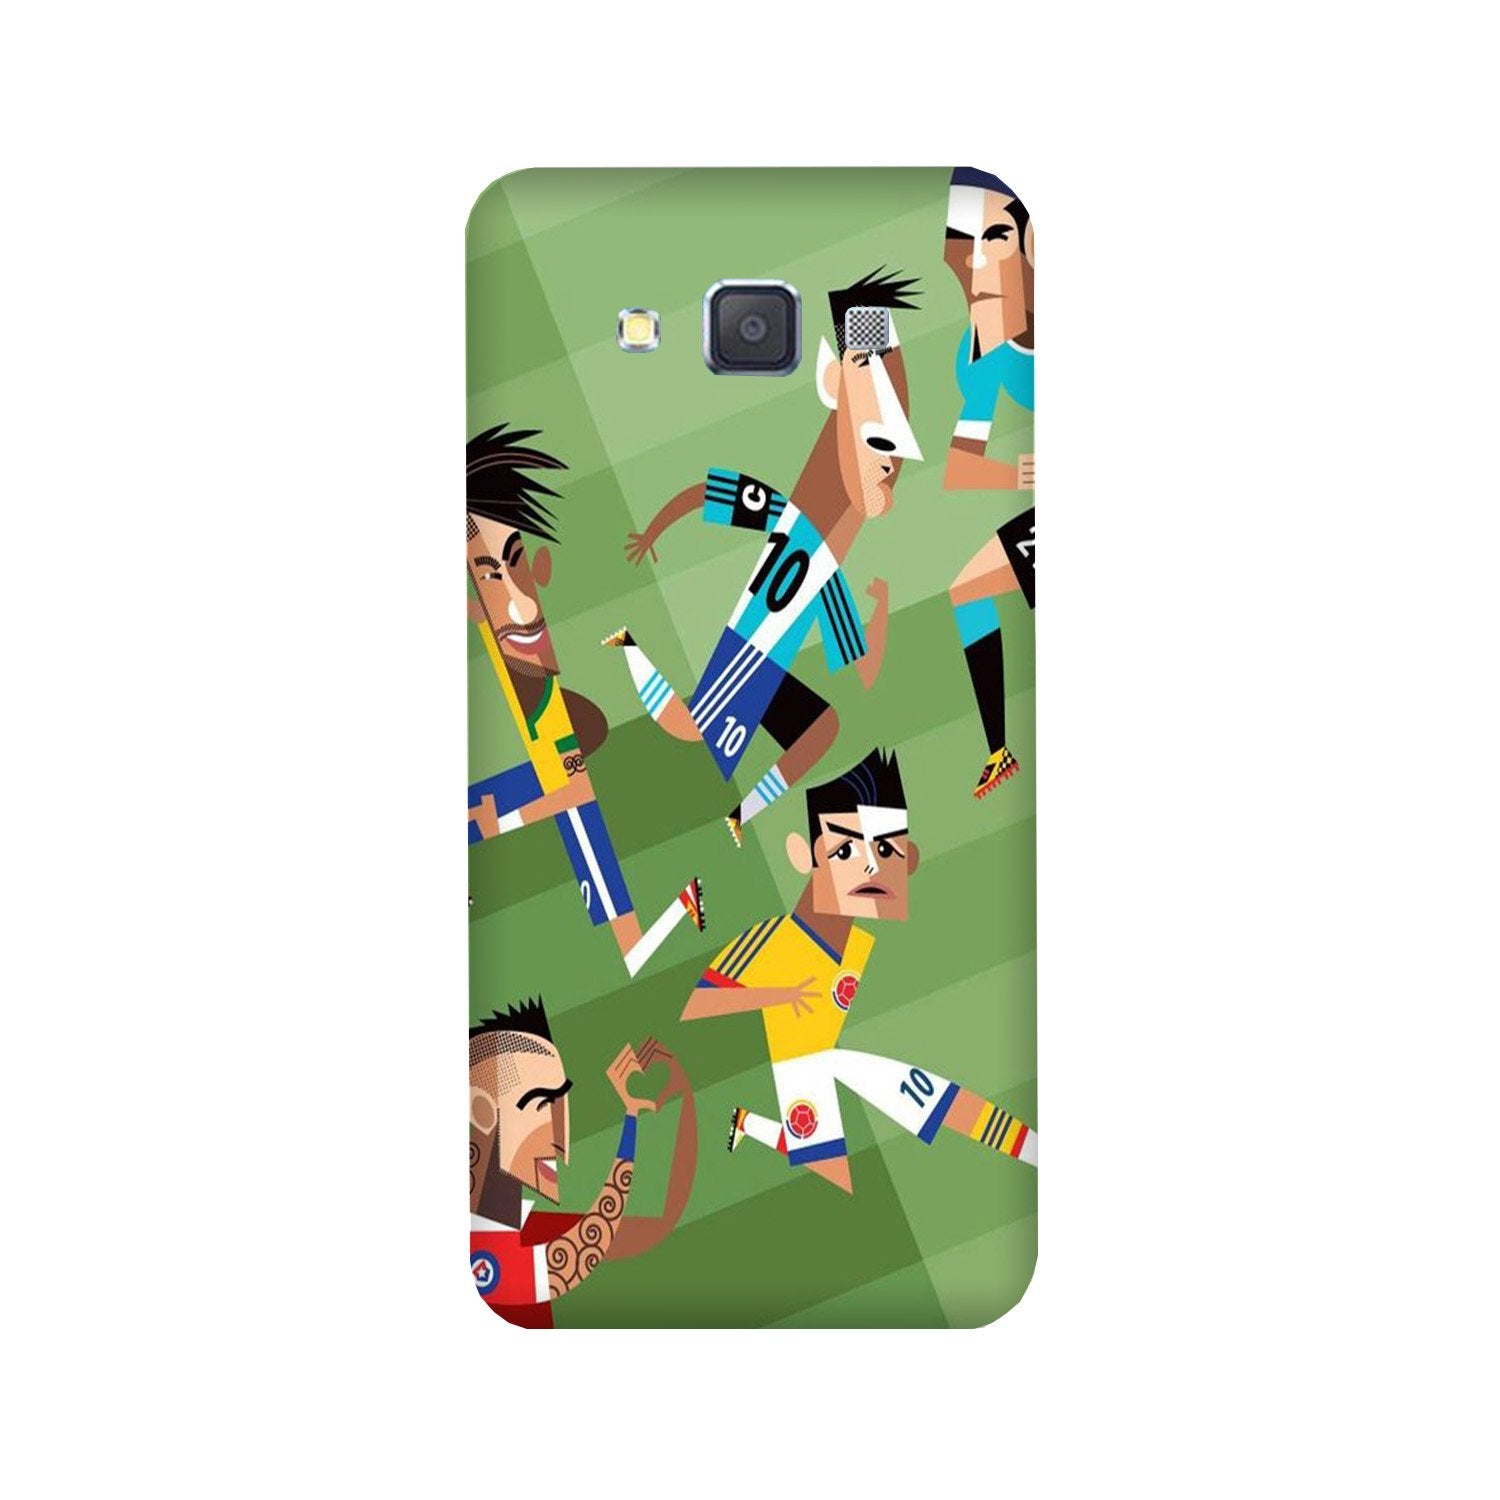 Football Case for Galaxy E7(Design - 166)